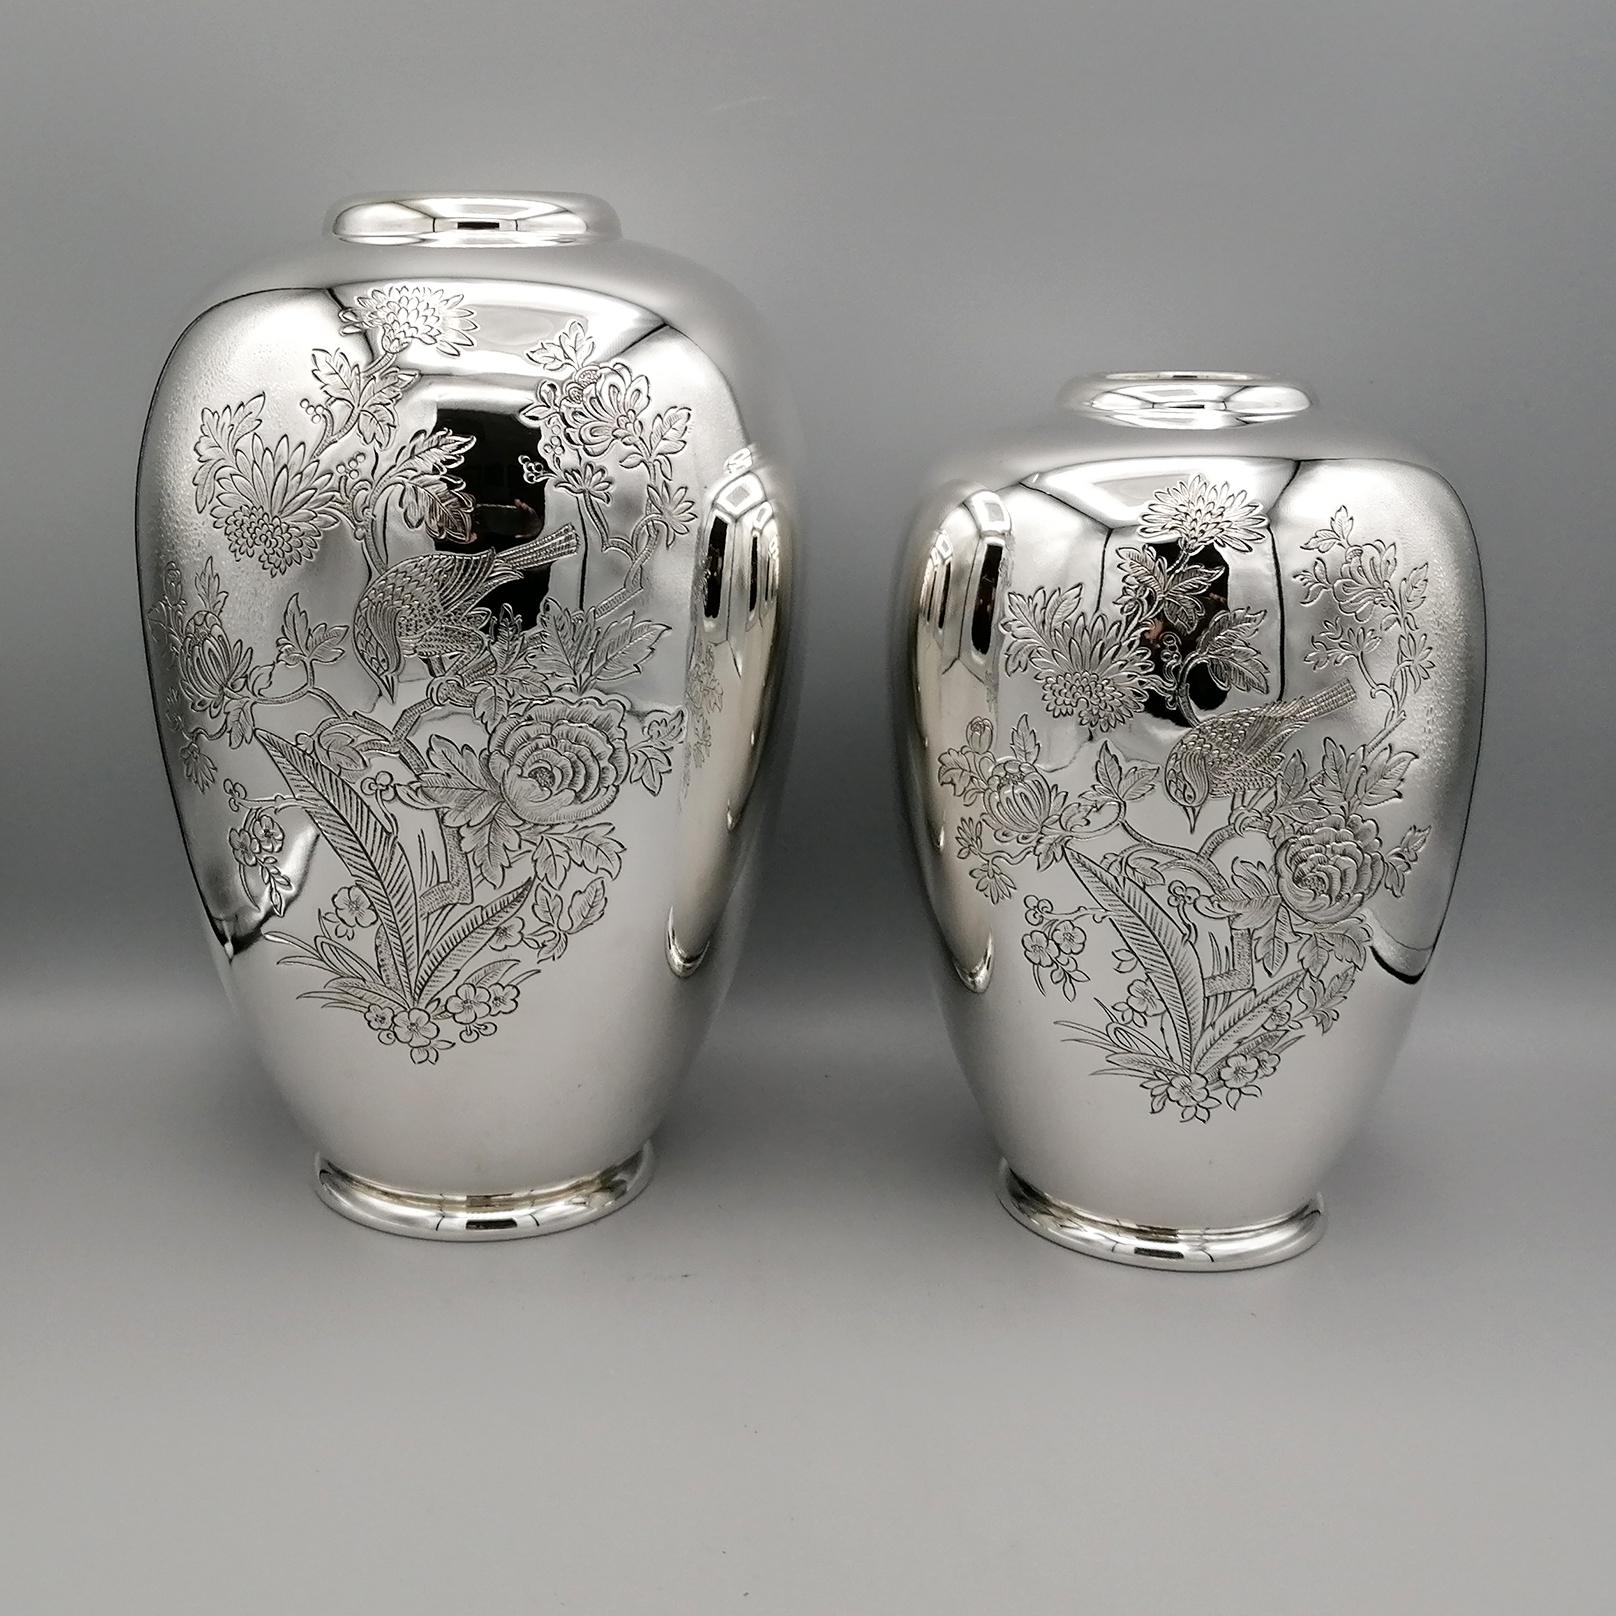 Paar Vasen aus massivem Silber 800.
Die Vasen haben eine runde, bauchige Form und wurden mit einer glatten und glänzenden Oberfläche hergestellt.
Die Vasen wurden mit einer Handgravur verziert, die eine orientalische Szene mit einem Vogel in der